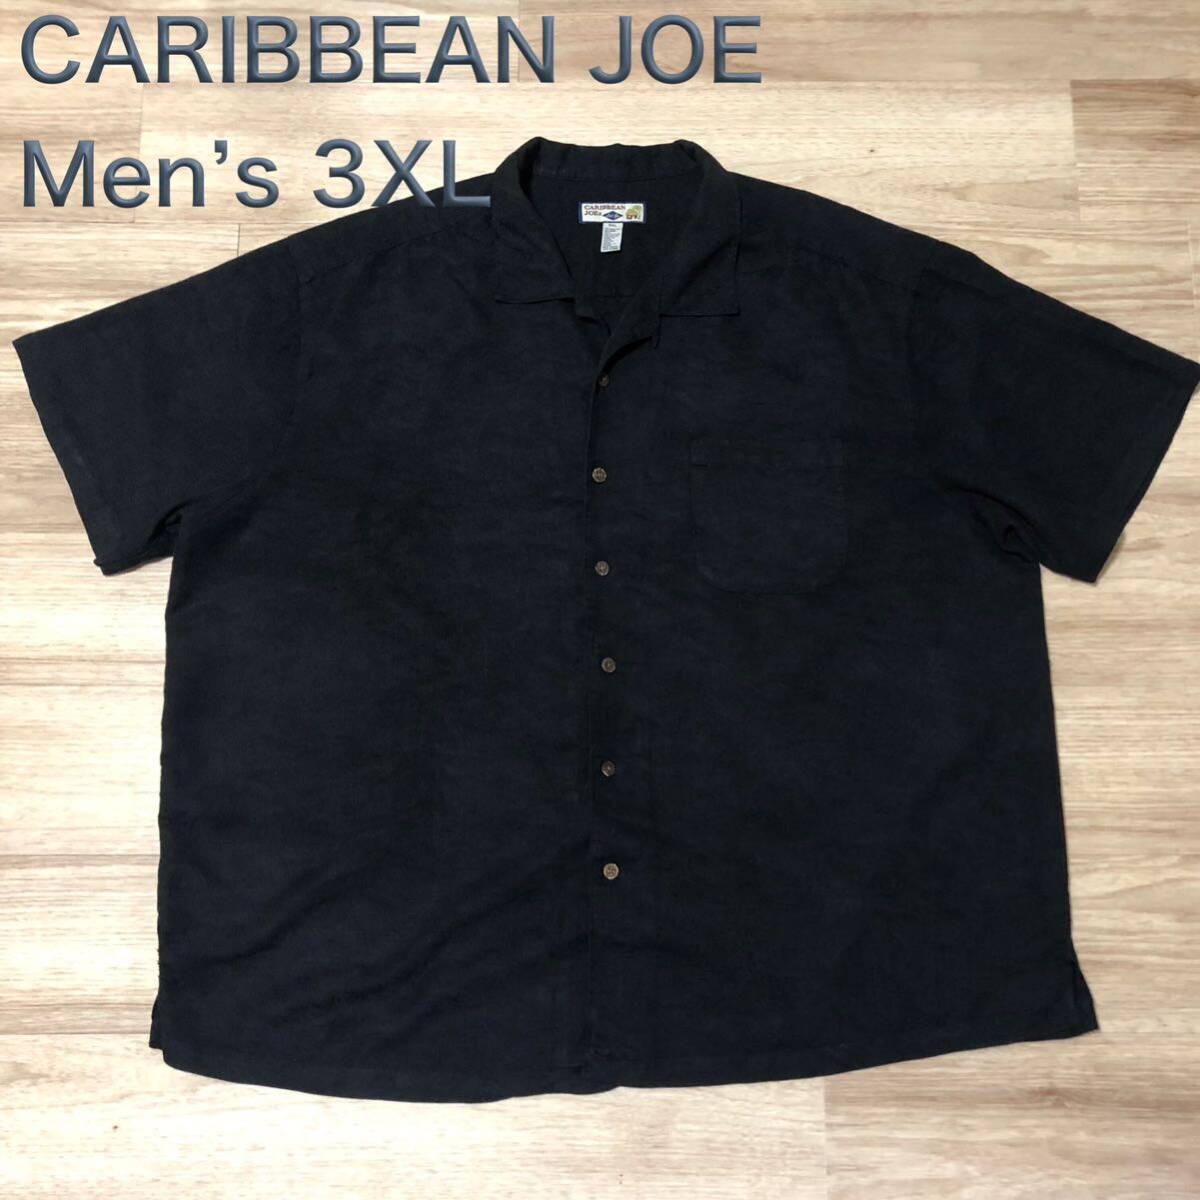 【送料無料】CARIBBEAN JOEレーヨン70%ポリエステル30%アロハシャツ 黒 メンズ3XLサイズ カリビアンジョーハワイアン半袖シャツの画像1